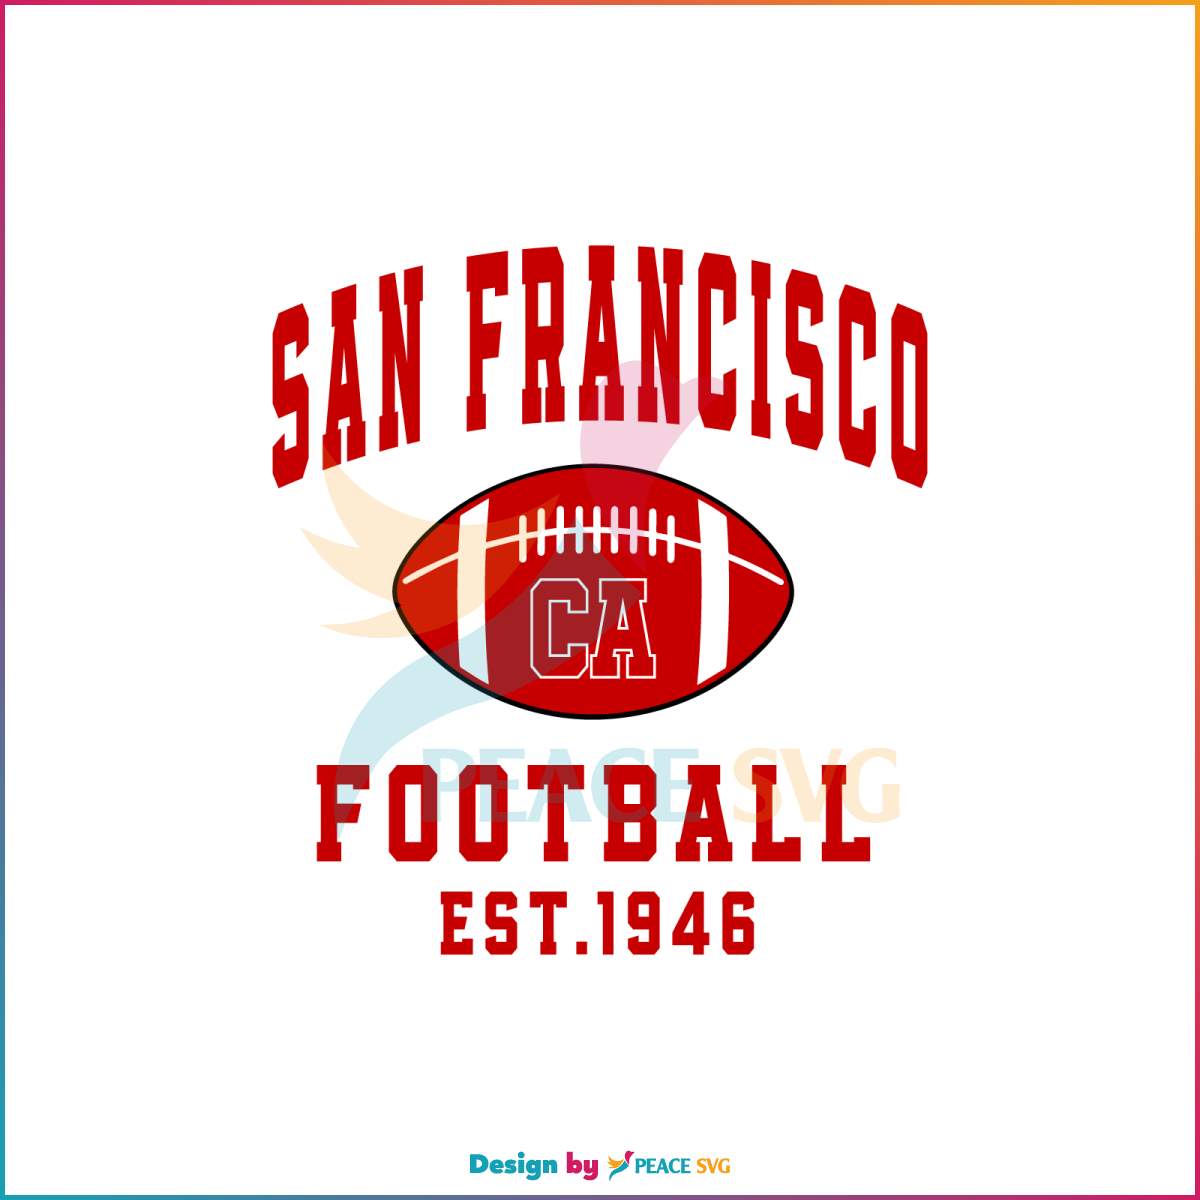 San Francisco Football Est 1946 SVG Cutting Digital File